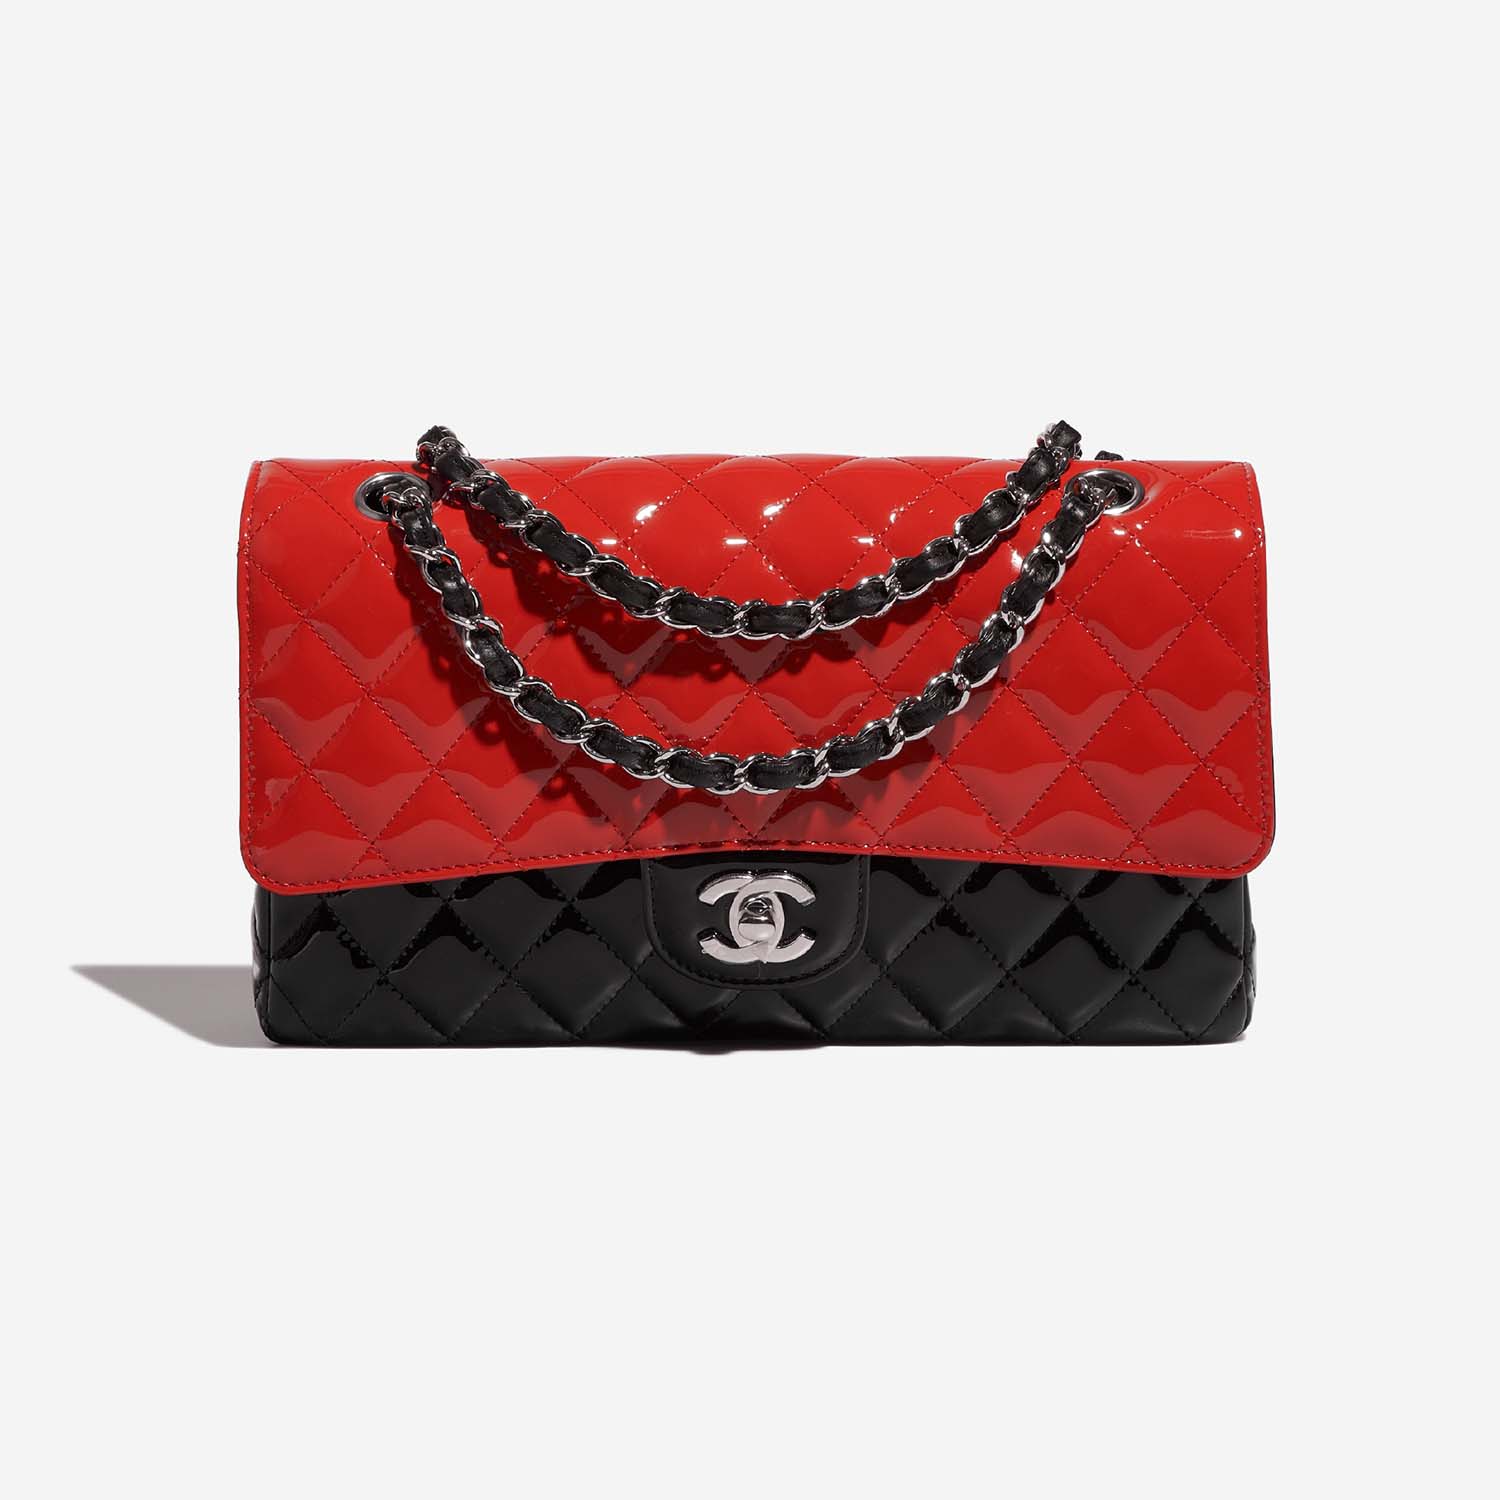 Chanel Timeless Medium Schwarz-Rot Front | Verkaufen Sie Ihre Designer-Tasche auf Saclab.com